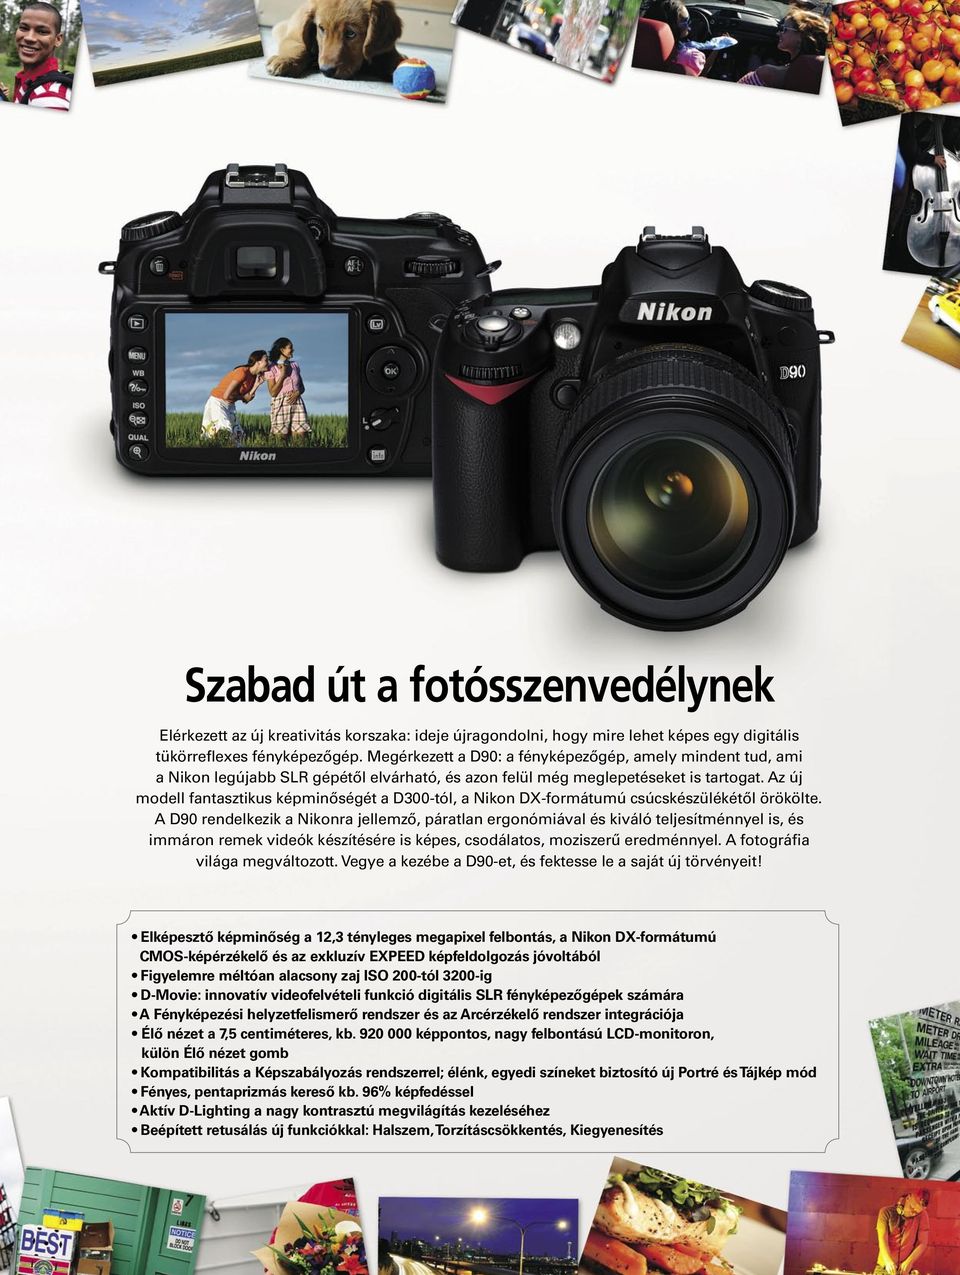 Az új modell fantasztikus képminőségét a D300-tól, a Nikon DX-formátumú csúcskészülékétől örökölte.